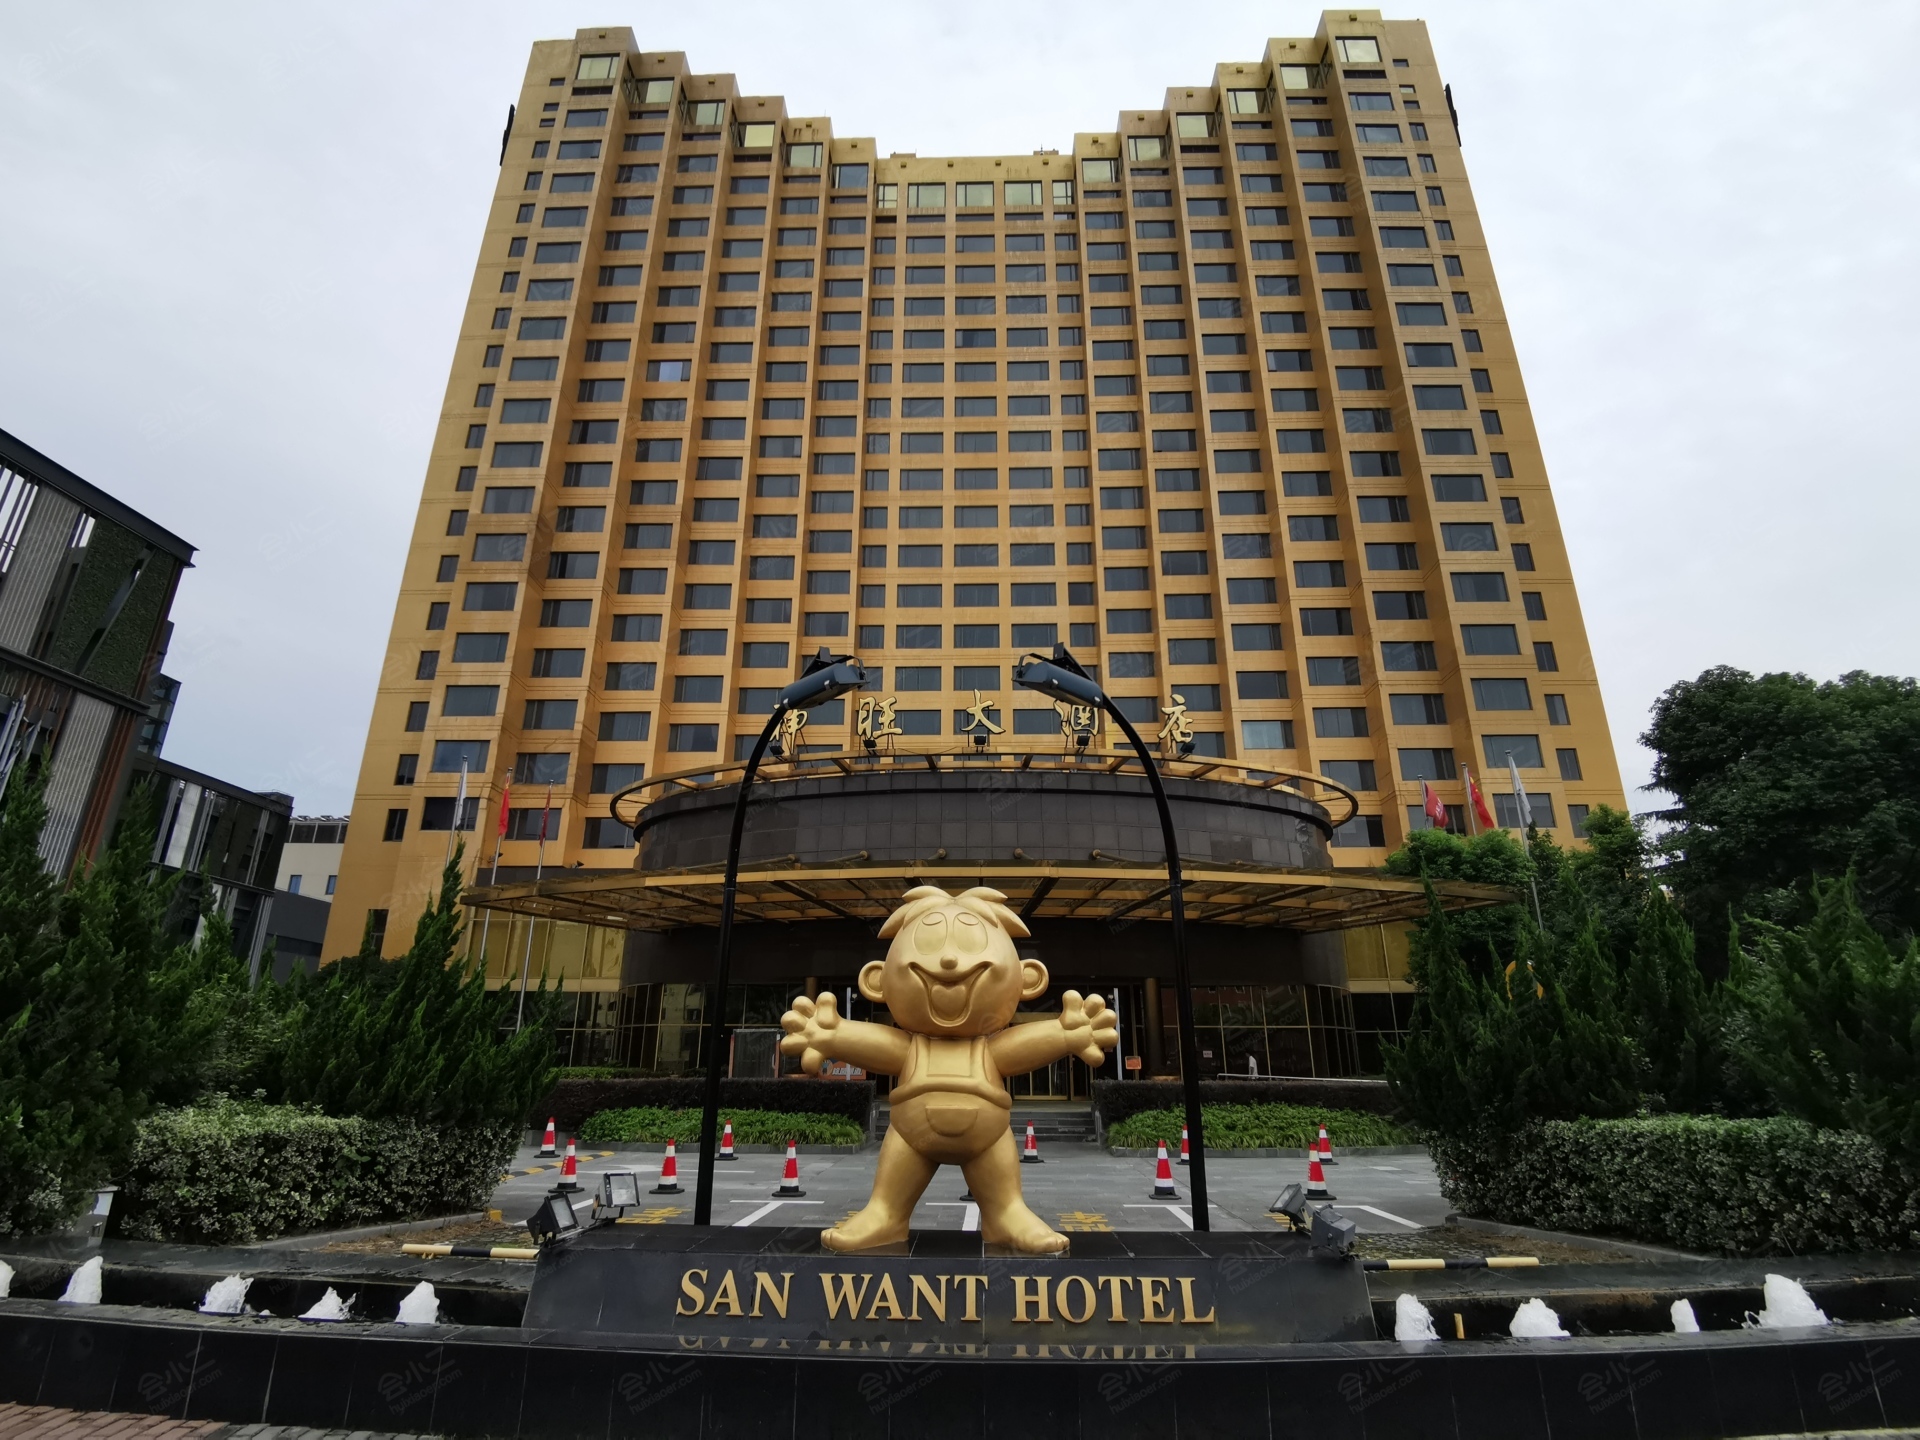 西安唐隆国际酒店 - 品牌与酒店 - 粤海酒店